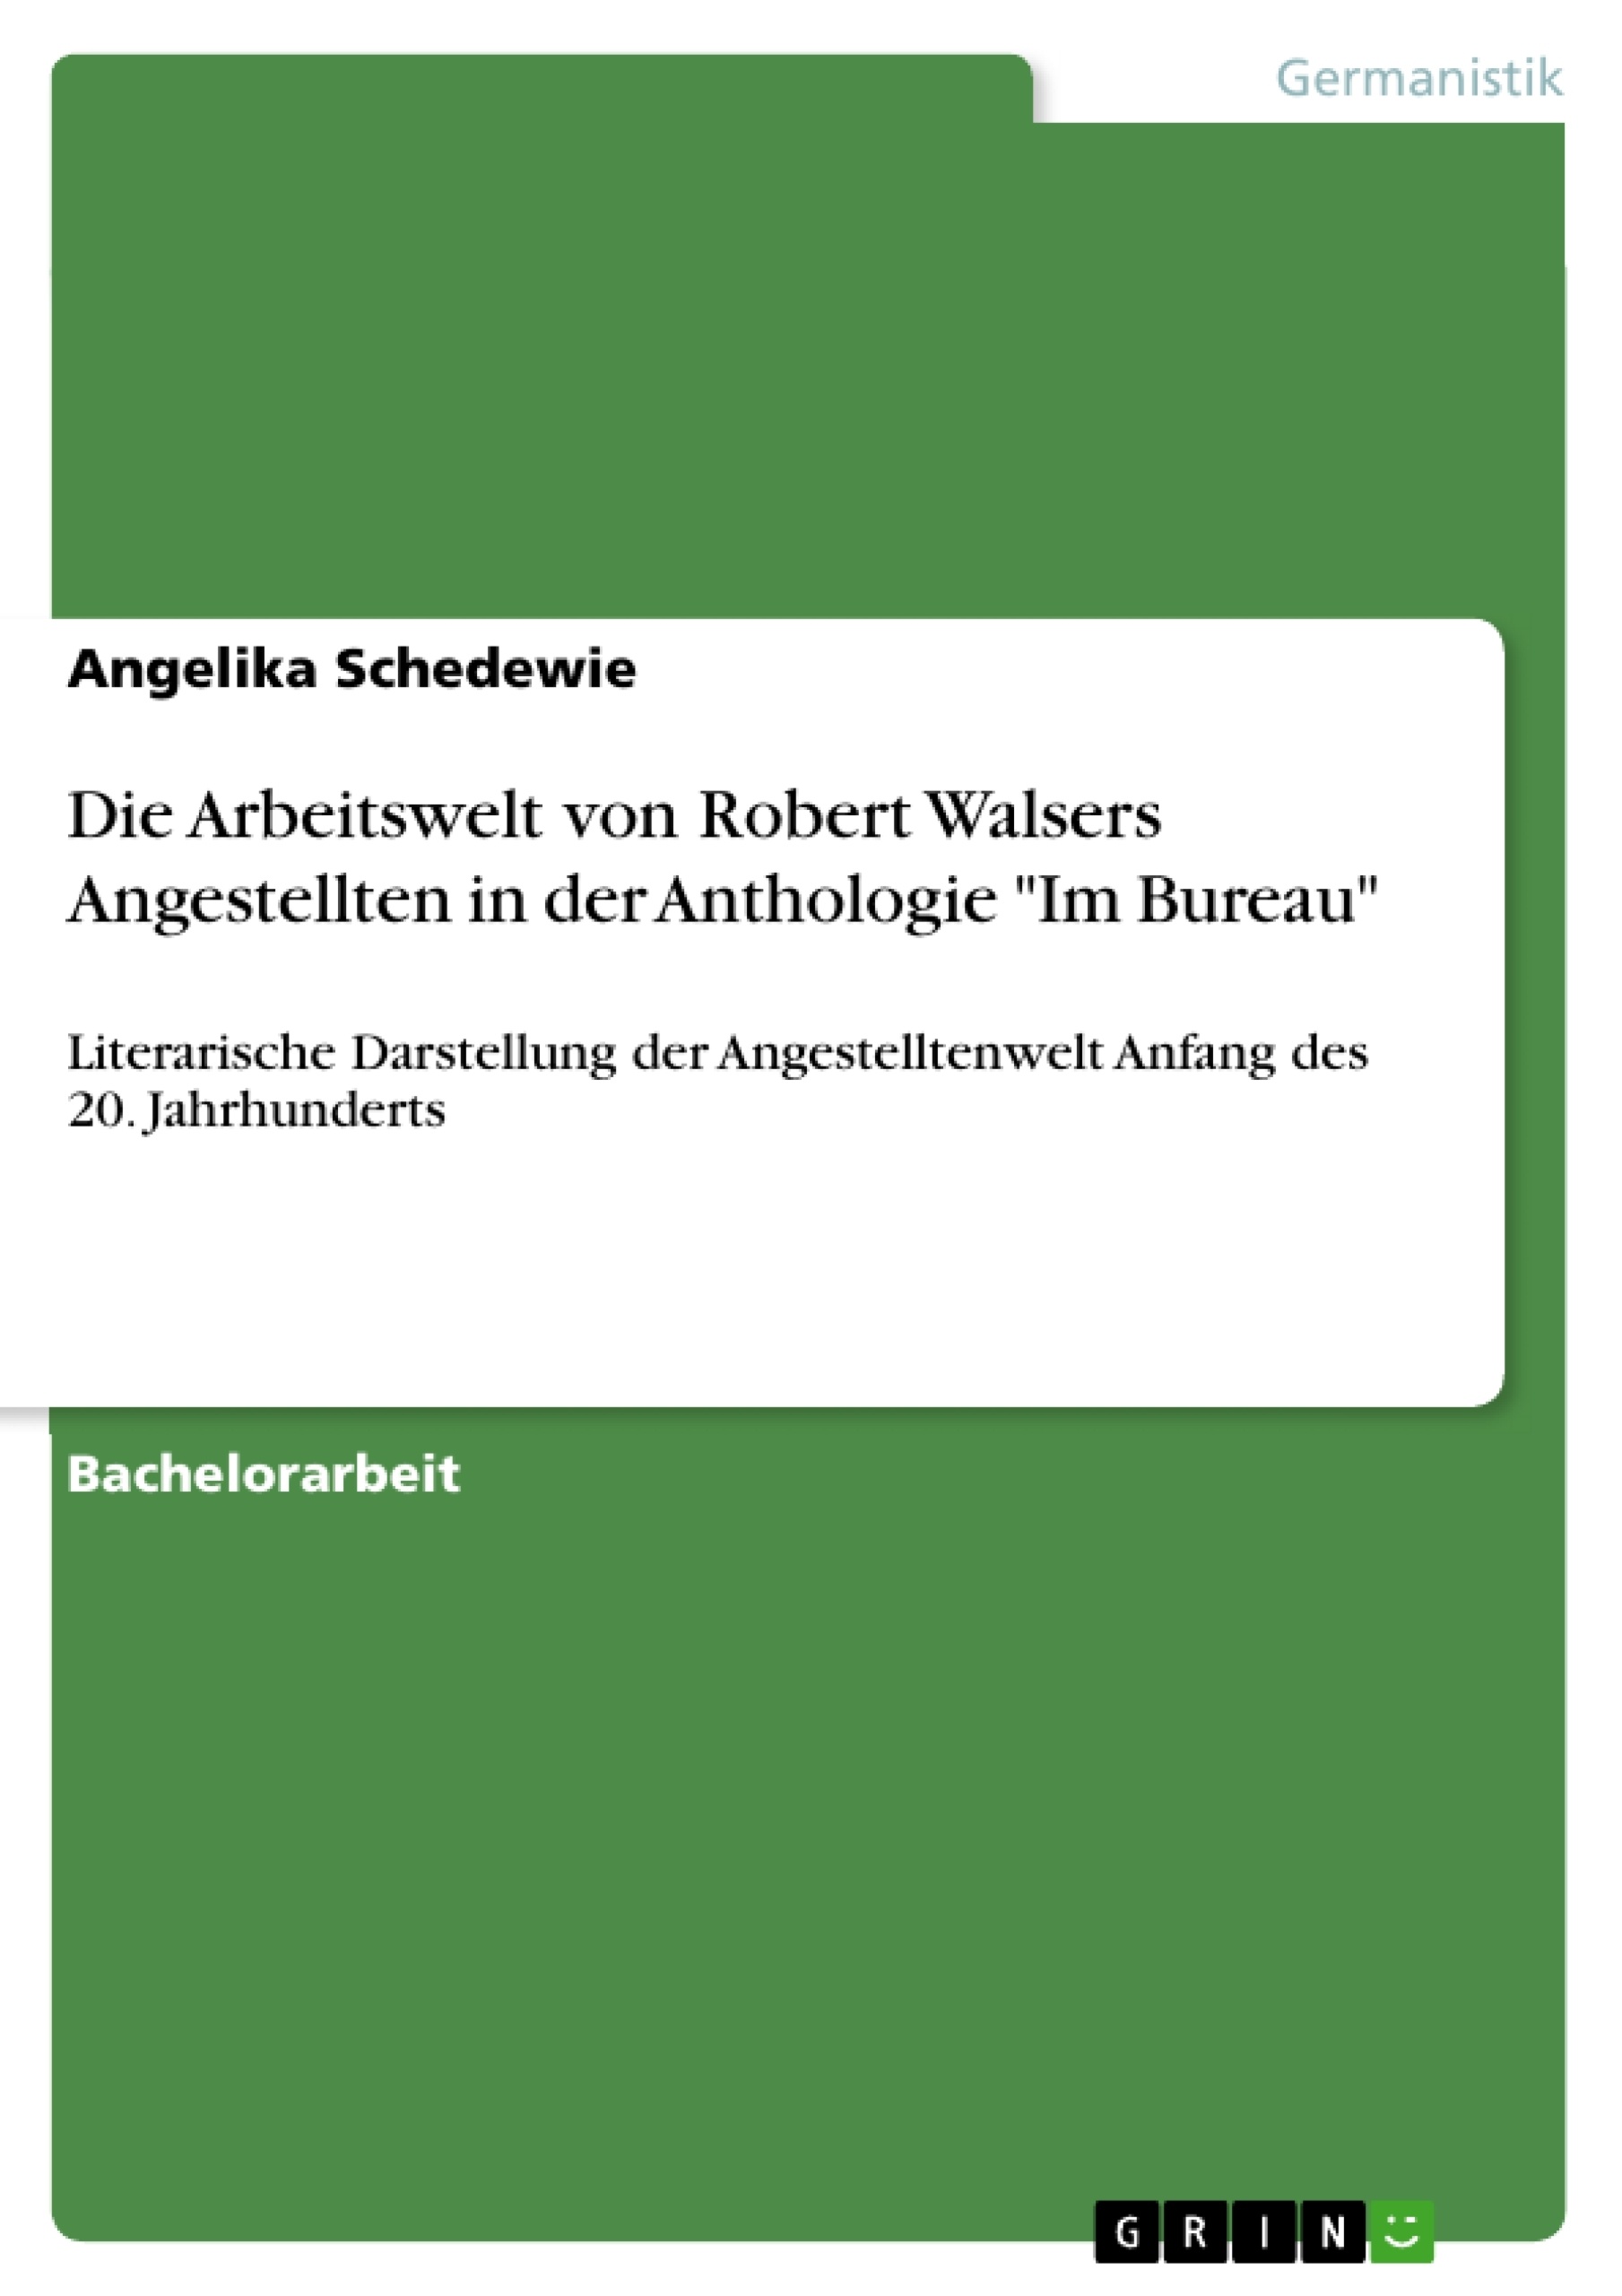 Title: Die Arbeitswelt von Robert Walsers Angestellten in der Anthologie "Im Bureau"